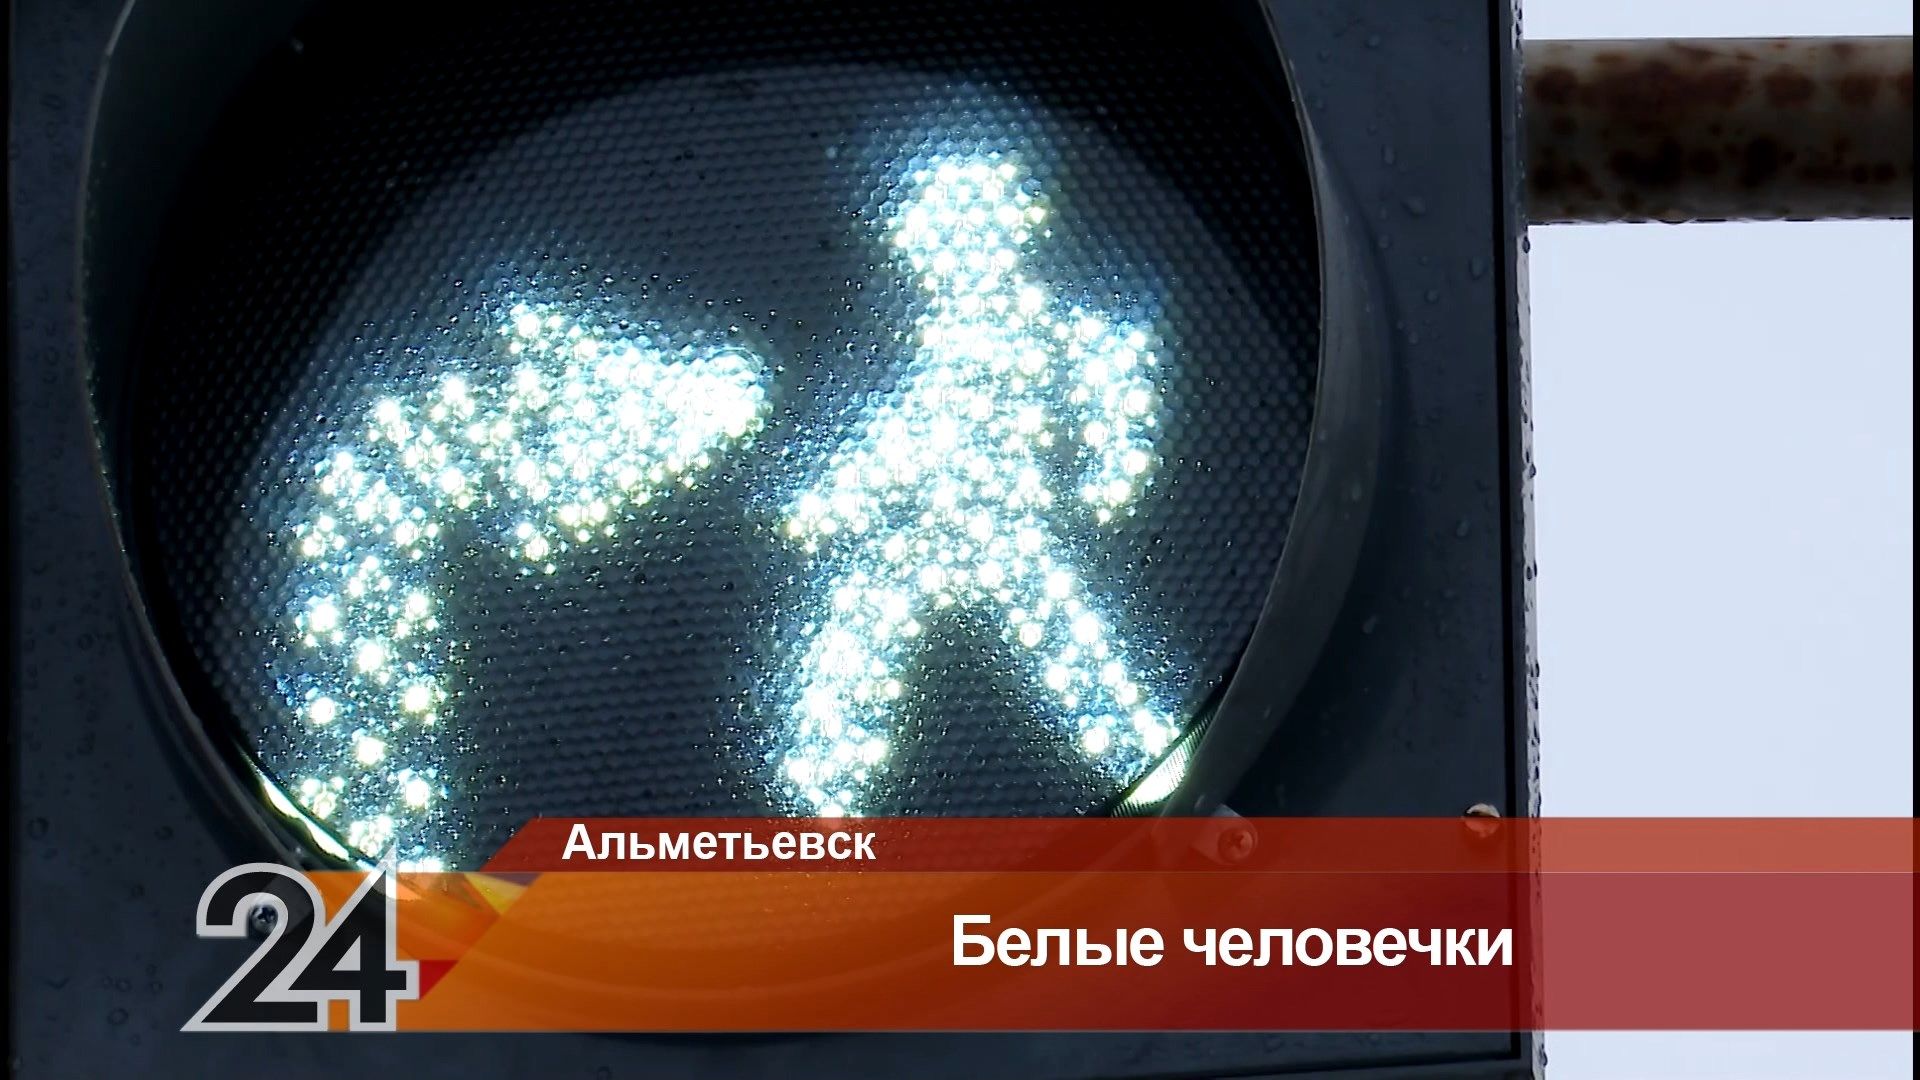 В Альметьевске установили новые светофоры с белыми человечками